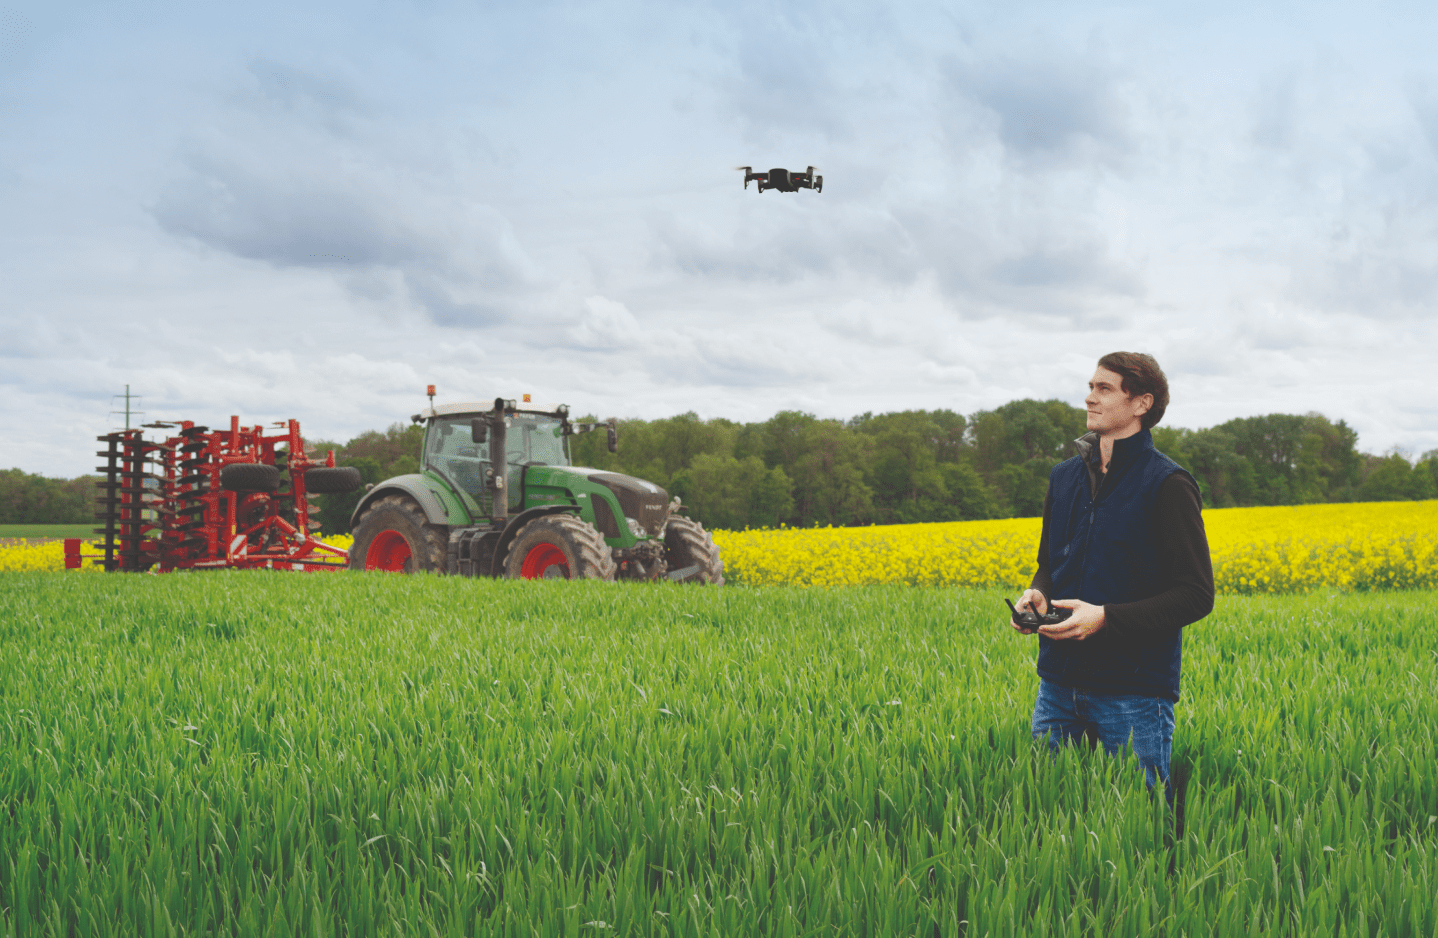 Agence WAT - Ministère de l'agriculture - Valoriser les métiers du vivant - Ambassadeurs Drone